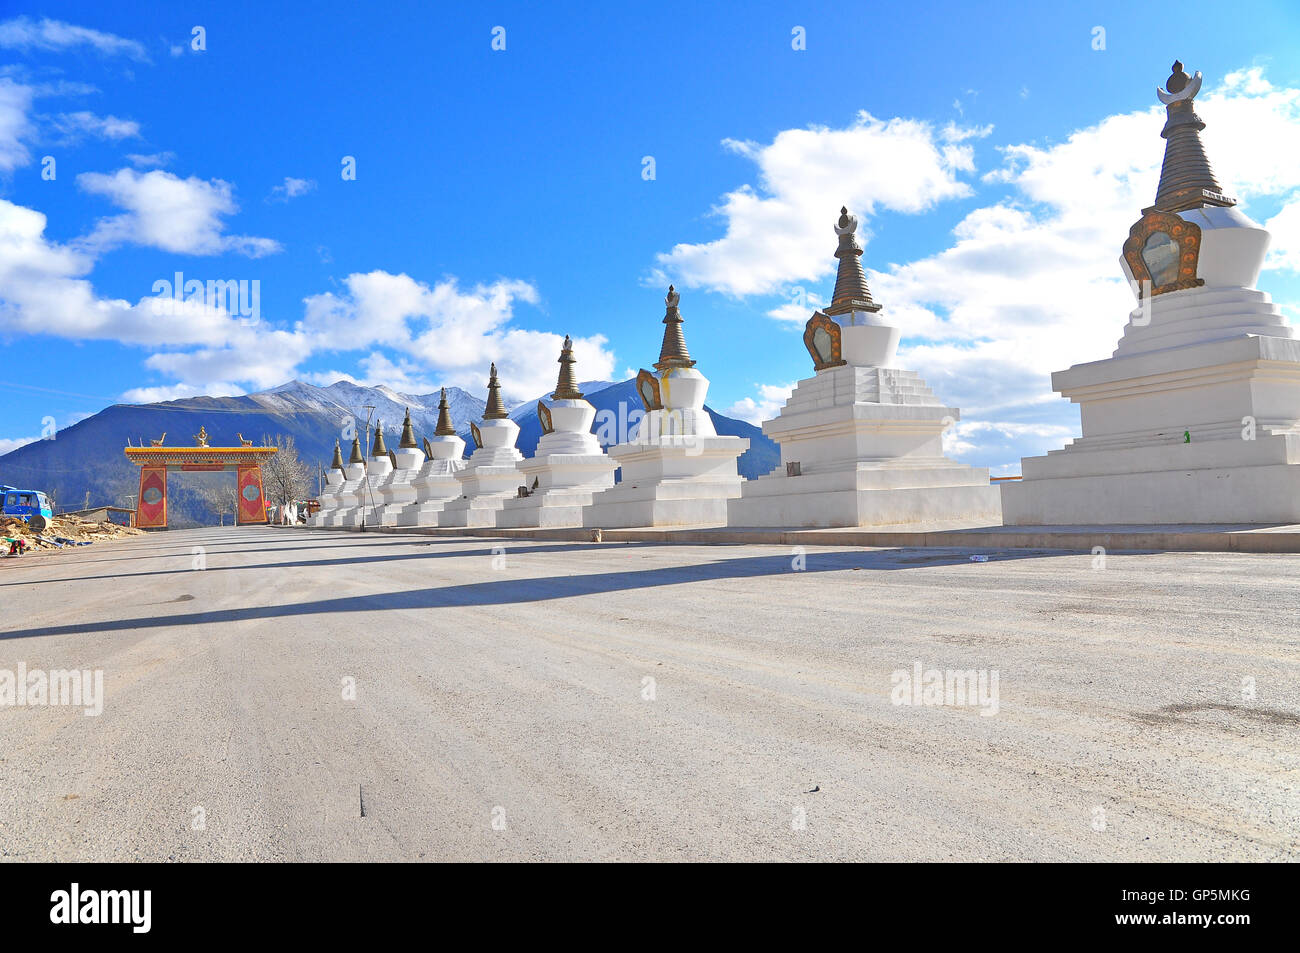 China. Yunnan. Shangri-La Region. Dequin, Shangri-La. Weg, Dequin, auf der tibetischen Border.Buddhist Stupa genannt. Auf die Hinterg Stockfoto